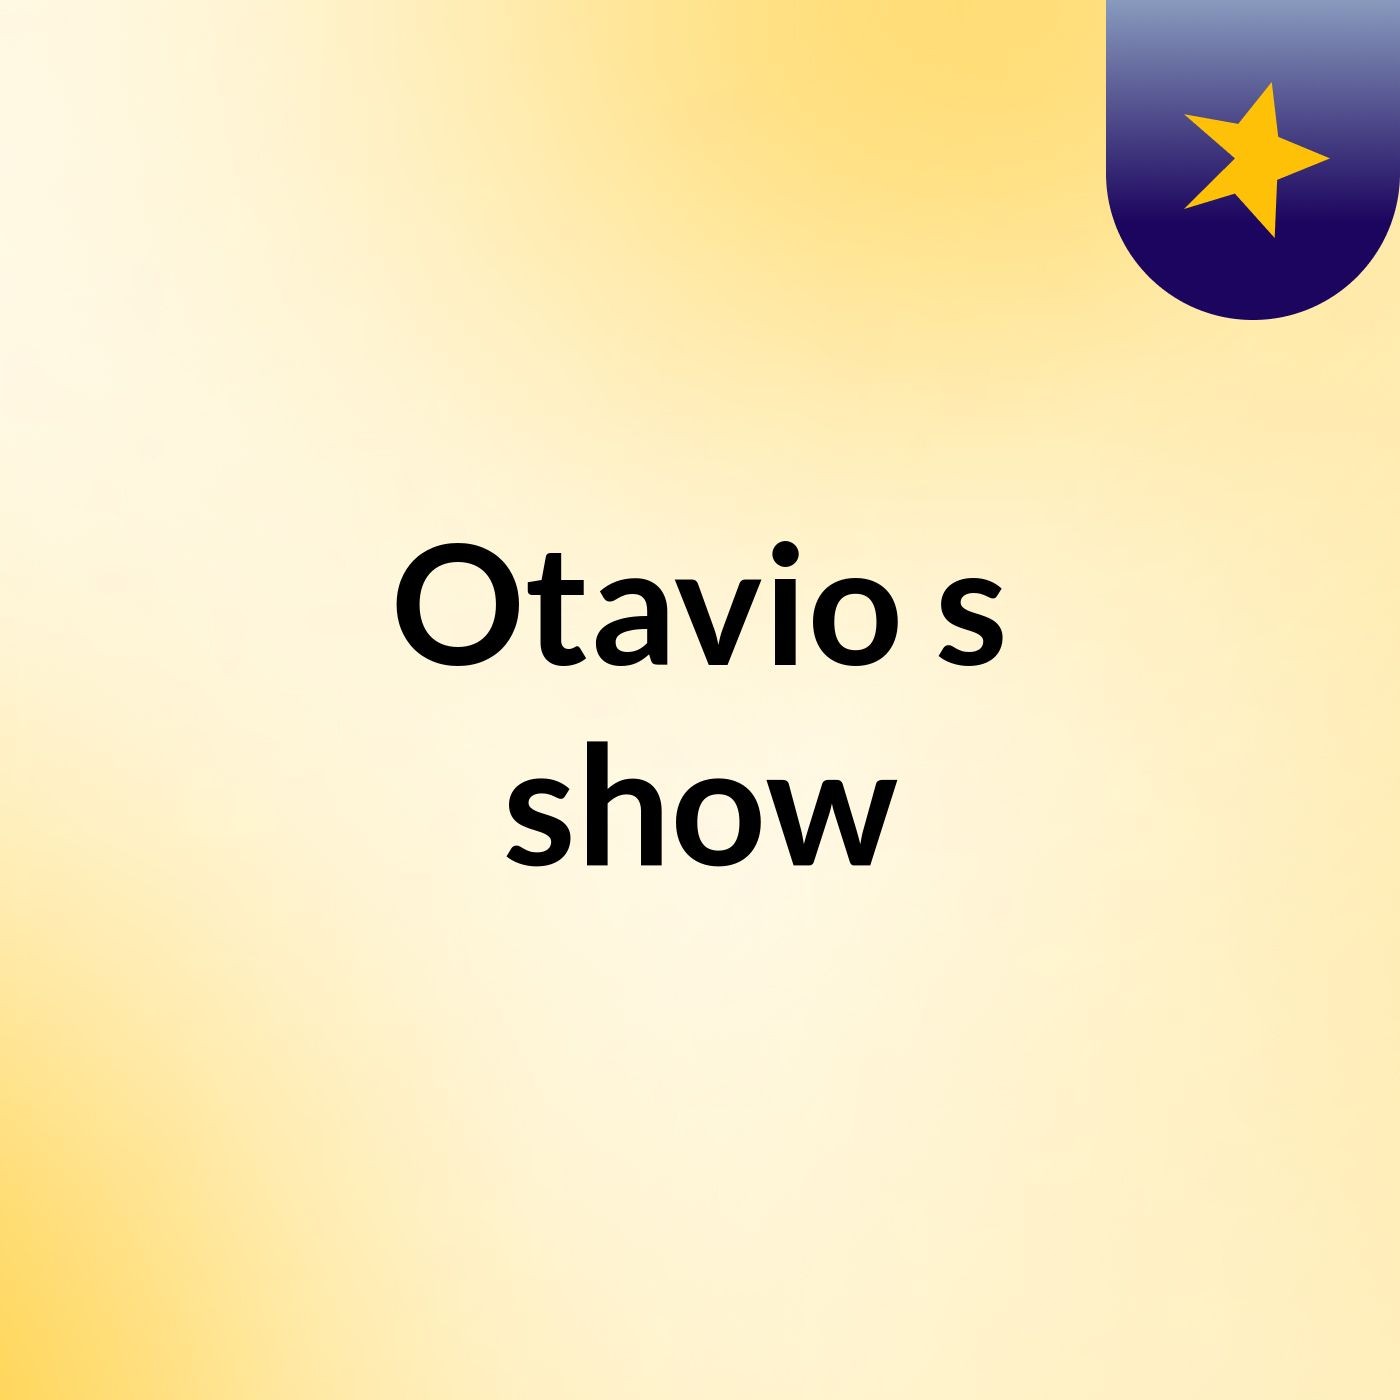 Otavio's show